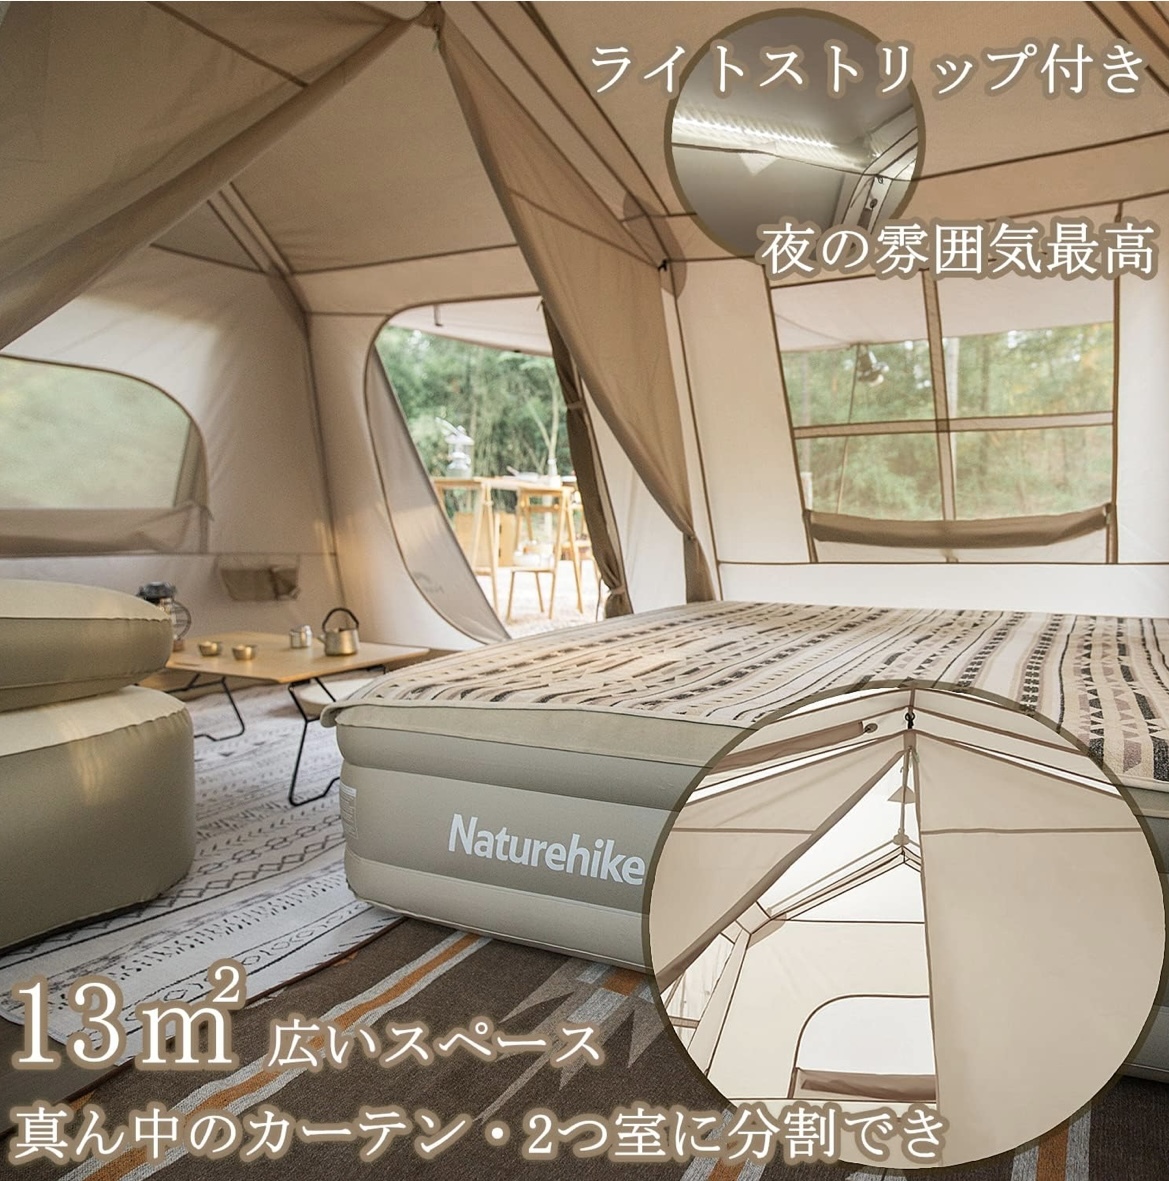 ワンタッチ テント 大型 2~6人用 ロッジ型 UPF50+ パークテント キャンプ 設営簡単 uvカット 自立式 2重層 耐水圧PU2000/3000の画像2